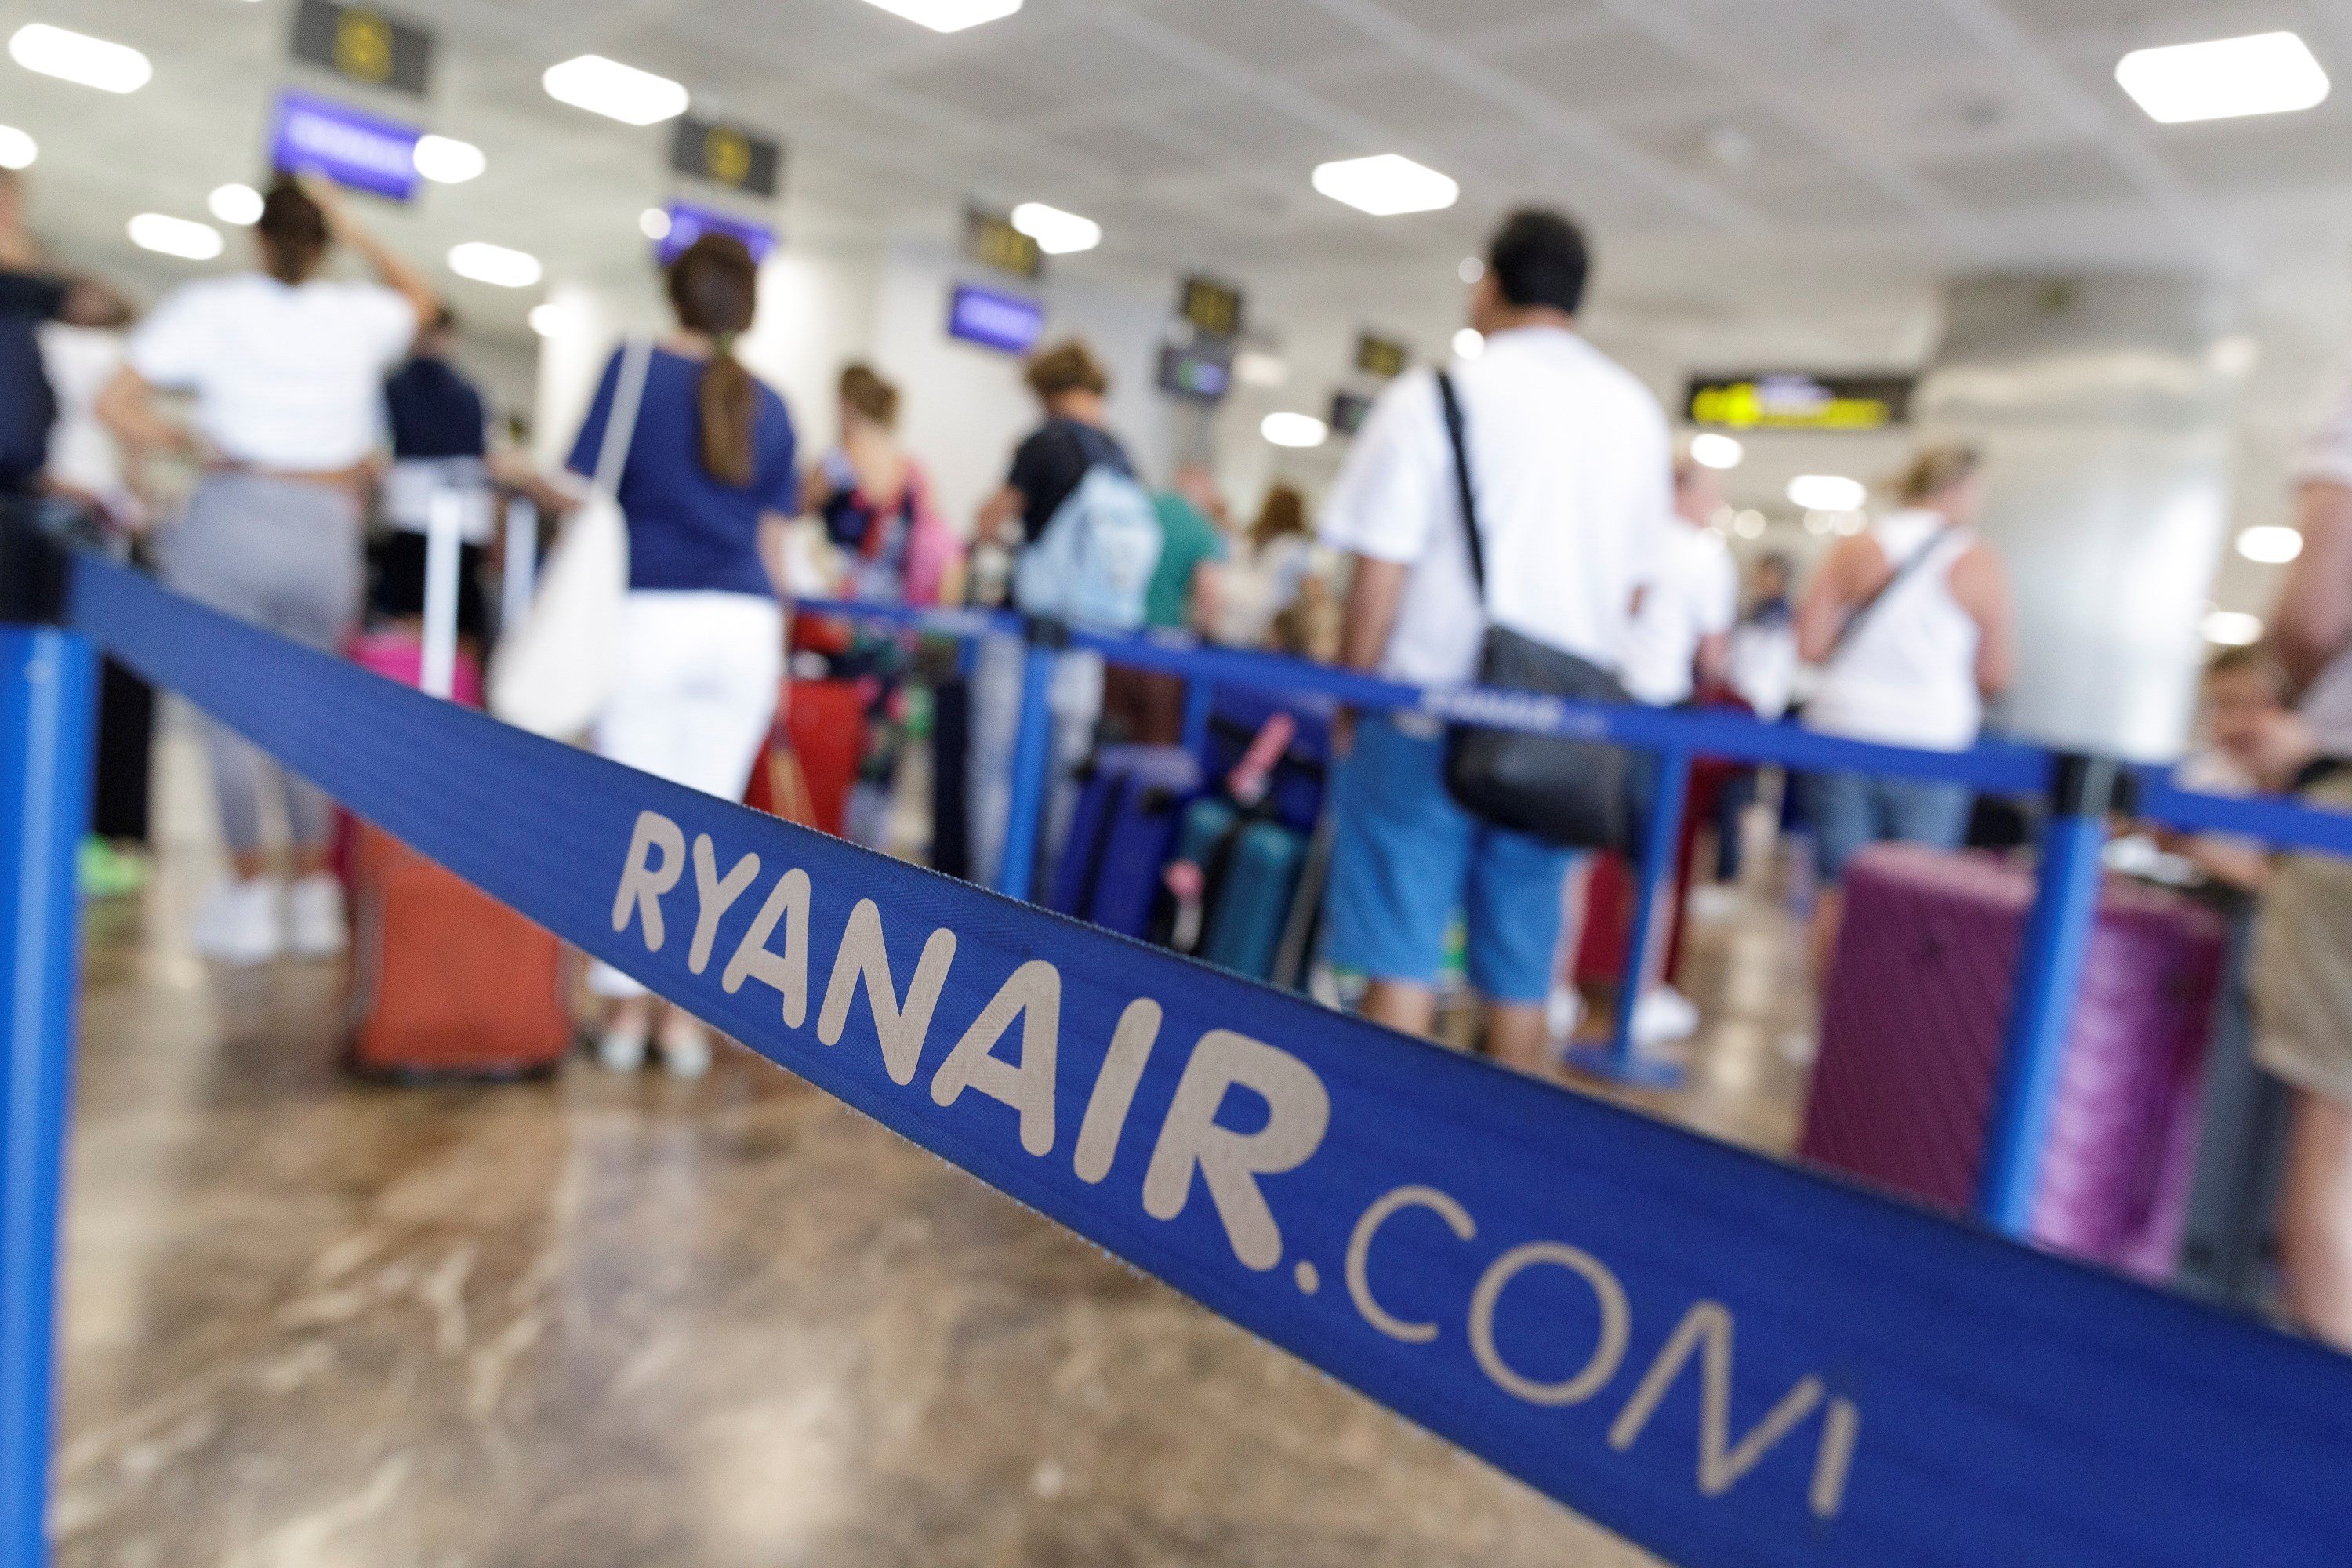 Ryanair confirma als sindicats 100 acomiadaments a la base de Girona